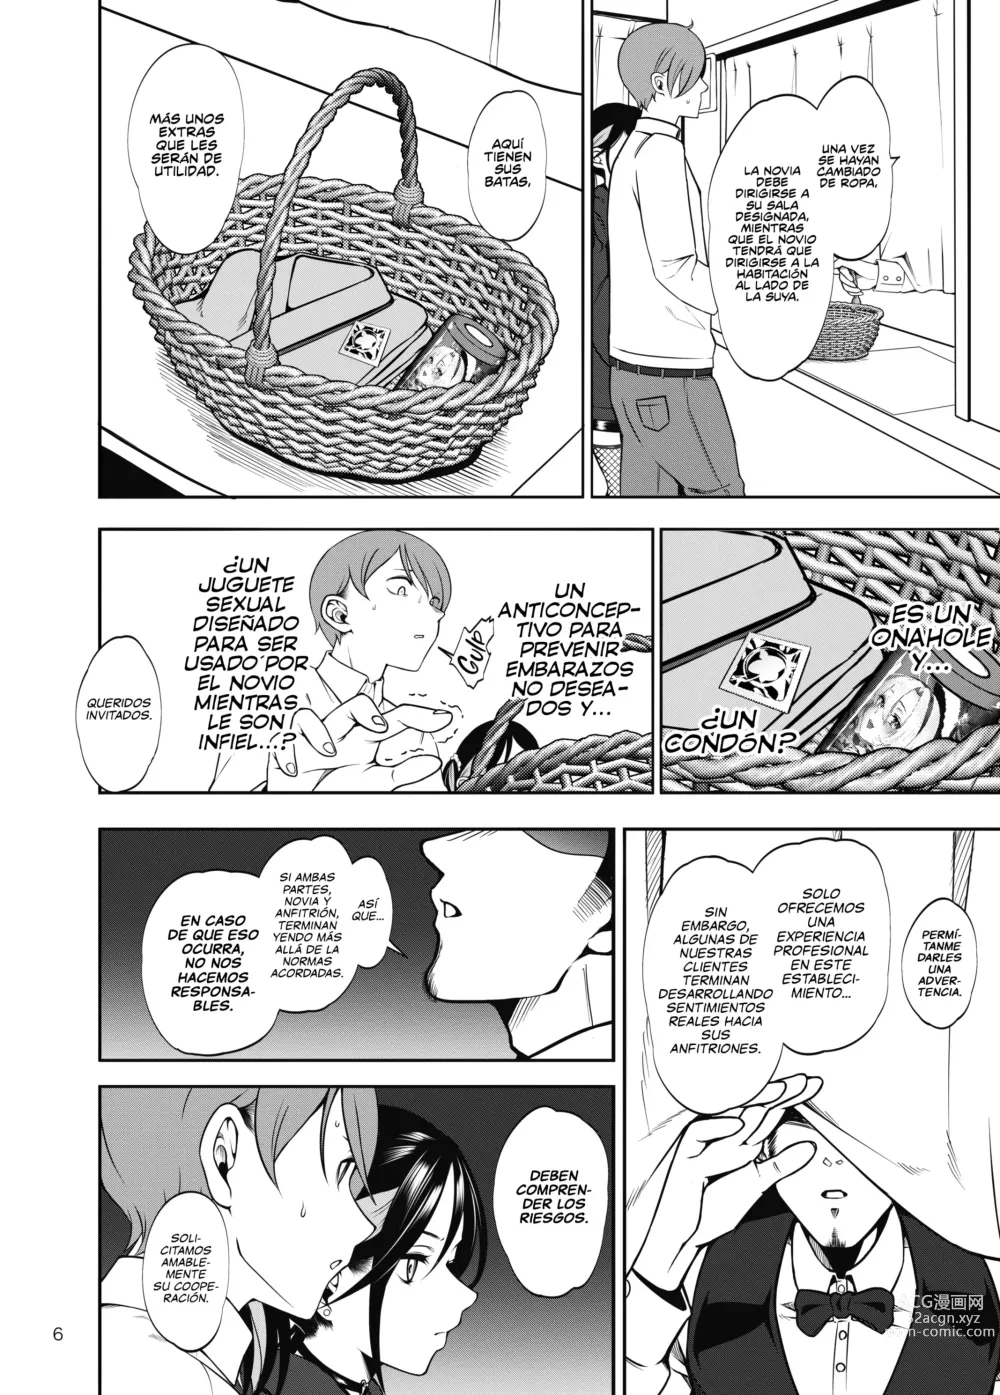 Page 7 of doujinshi ¡Llevar a mi Novia a un Burdel NTR no fue Buena Idea! (decensored)